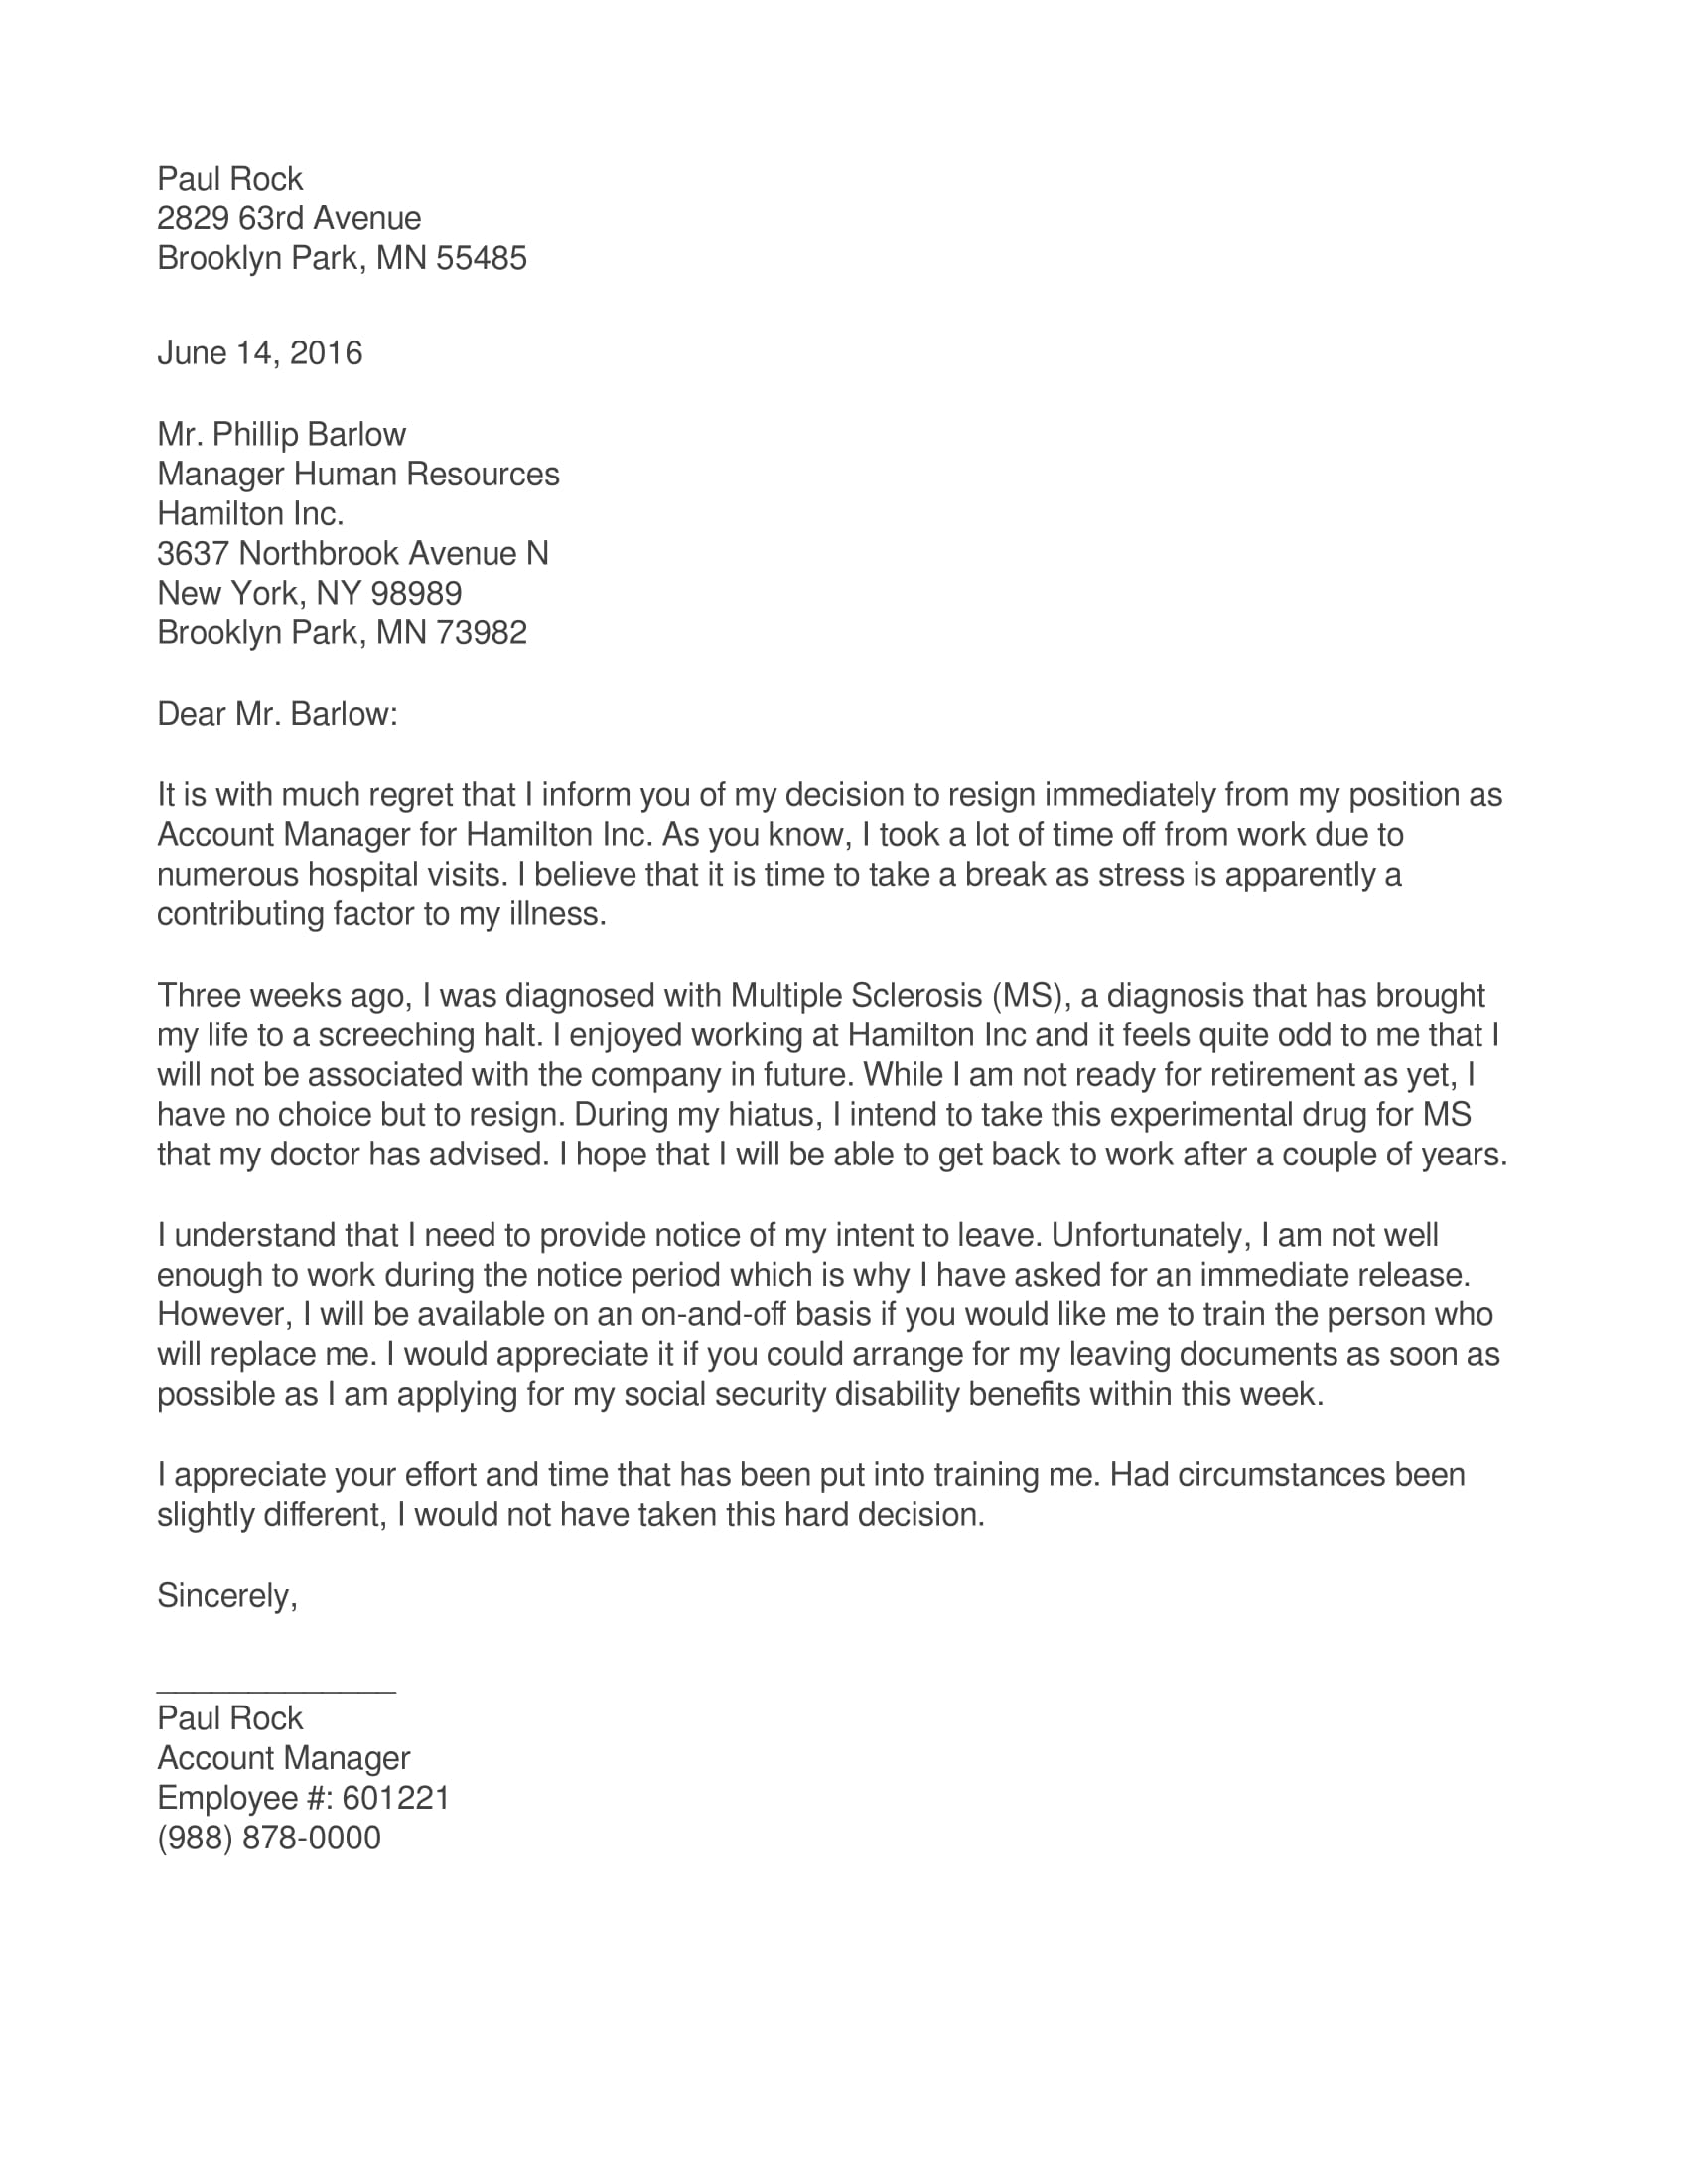 Resignation Letter For Mental Health Reasons